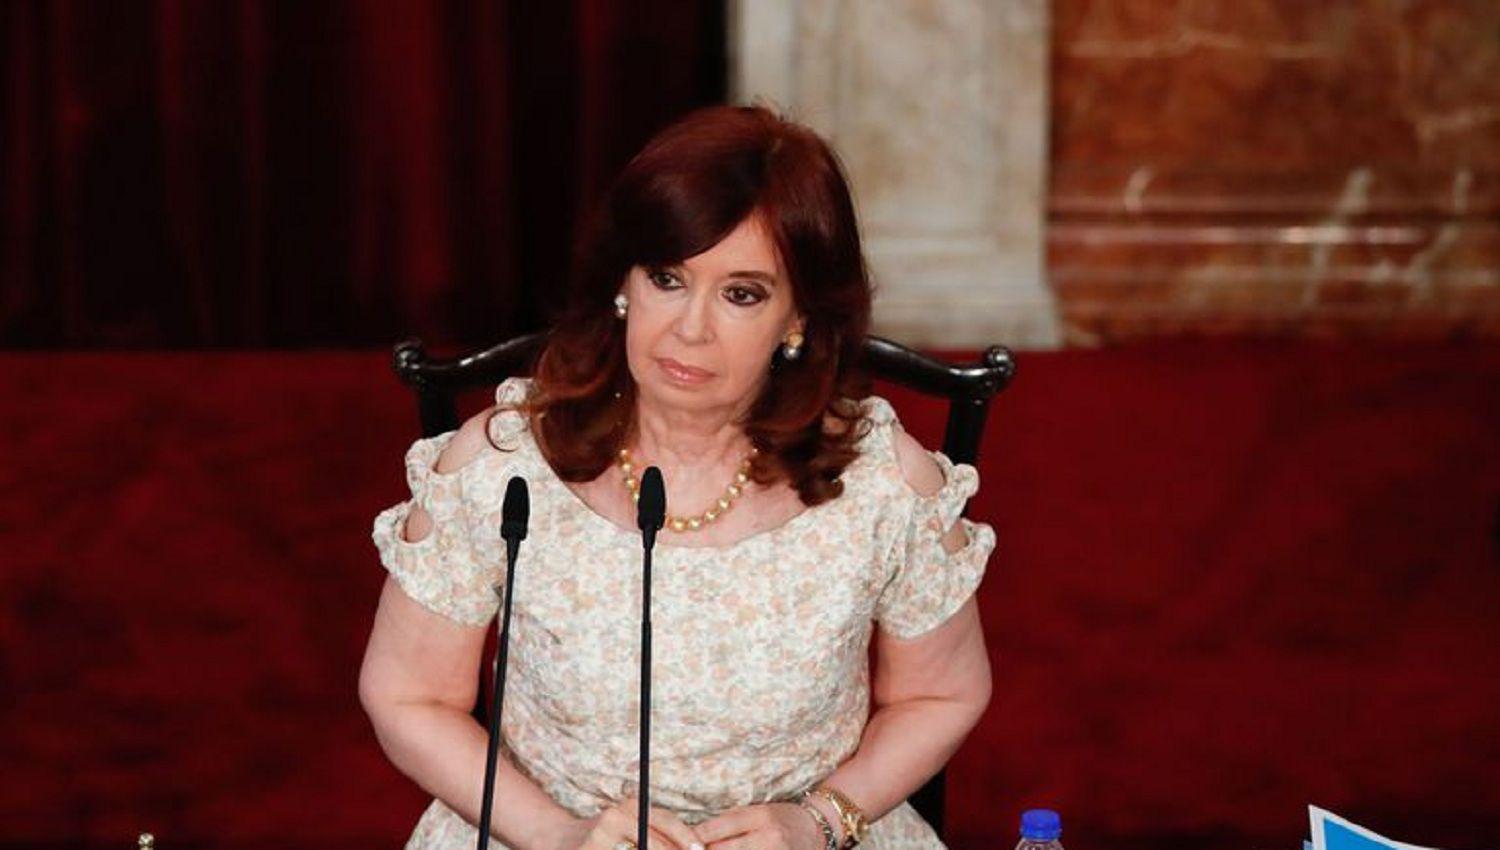 CFK y un ldquopalordquo a la Corte Suprema tras el fallo- ldquoLos golpes a las instituciones ya no son como antantildeordquo